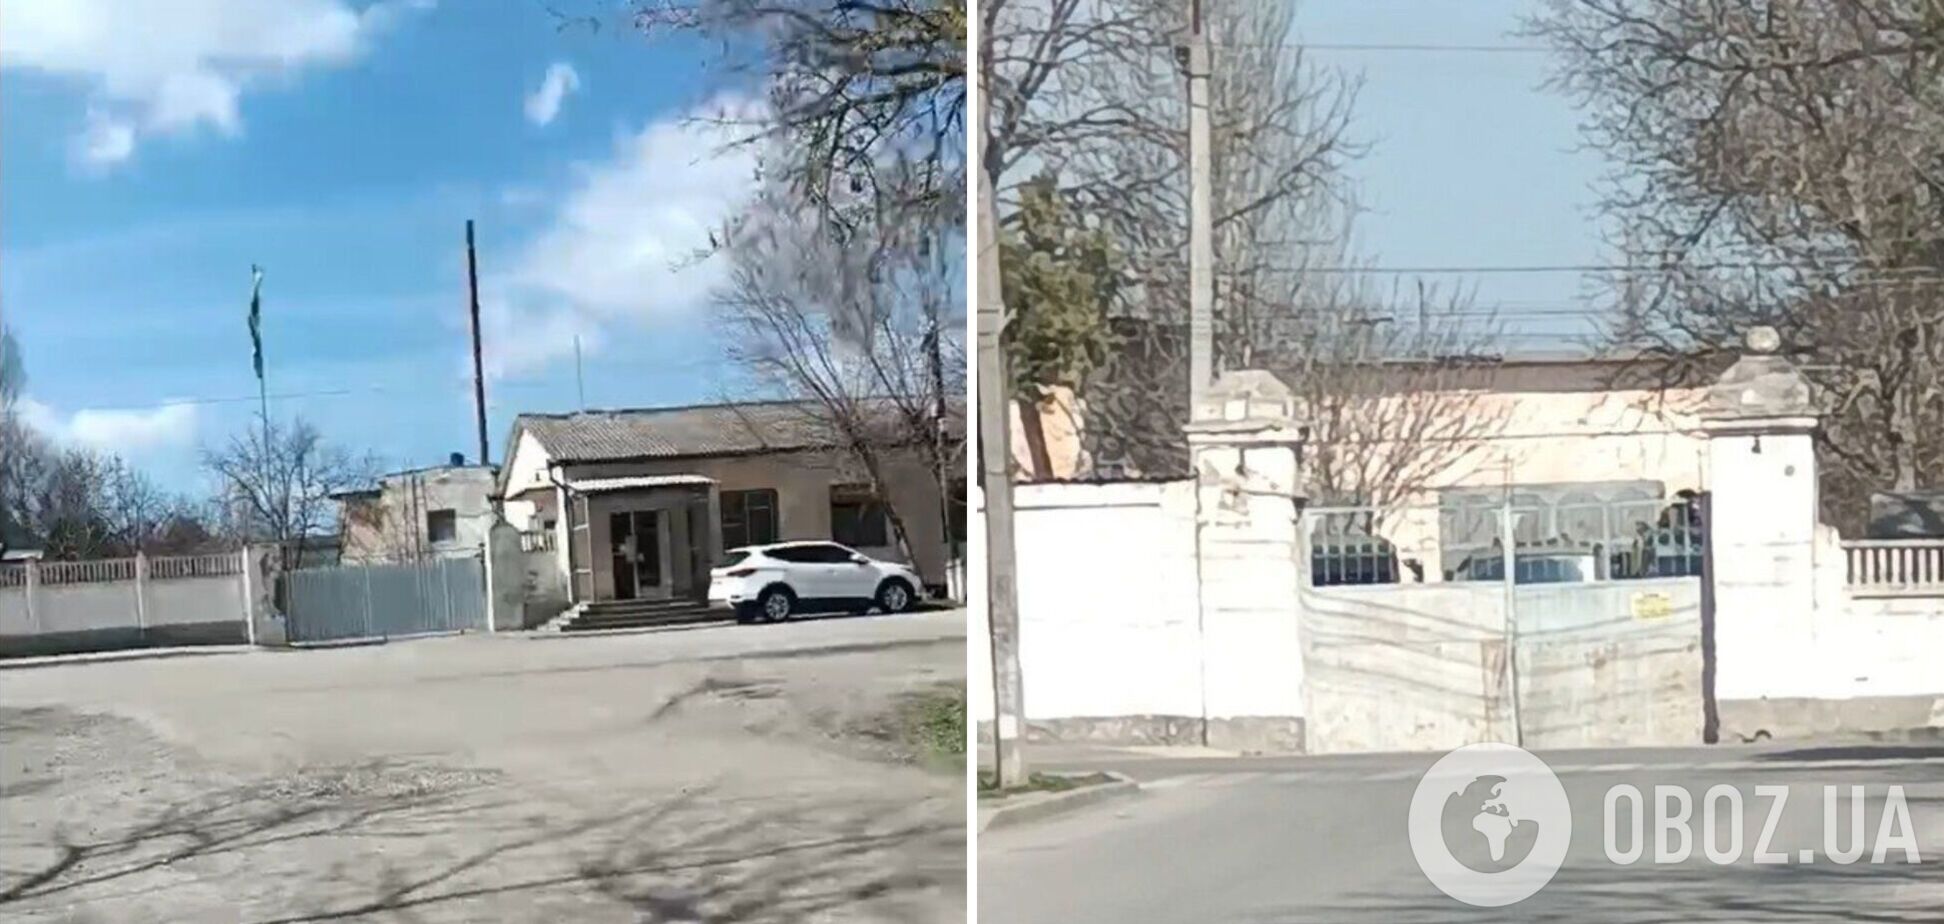 Створили фальшивий 'об'єкт'? В 'Атеш' розкрили дані про переміщення окупантами техніки в Криму. Фото